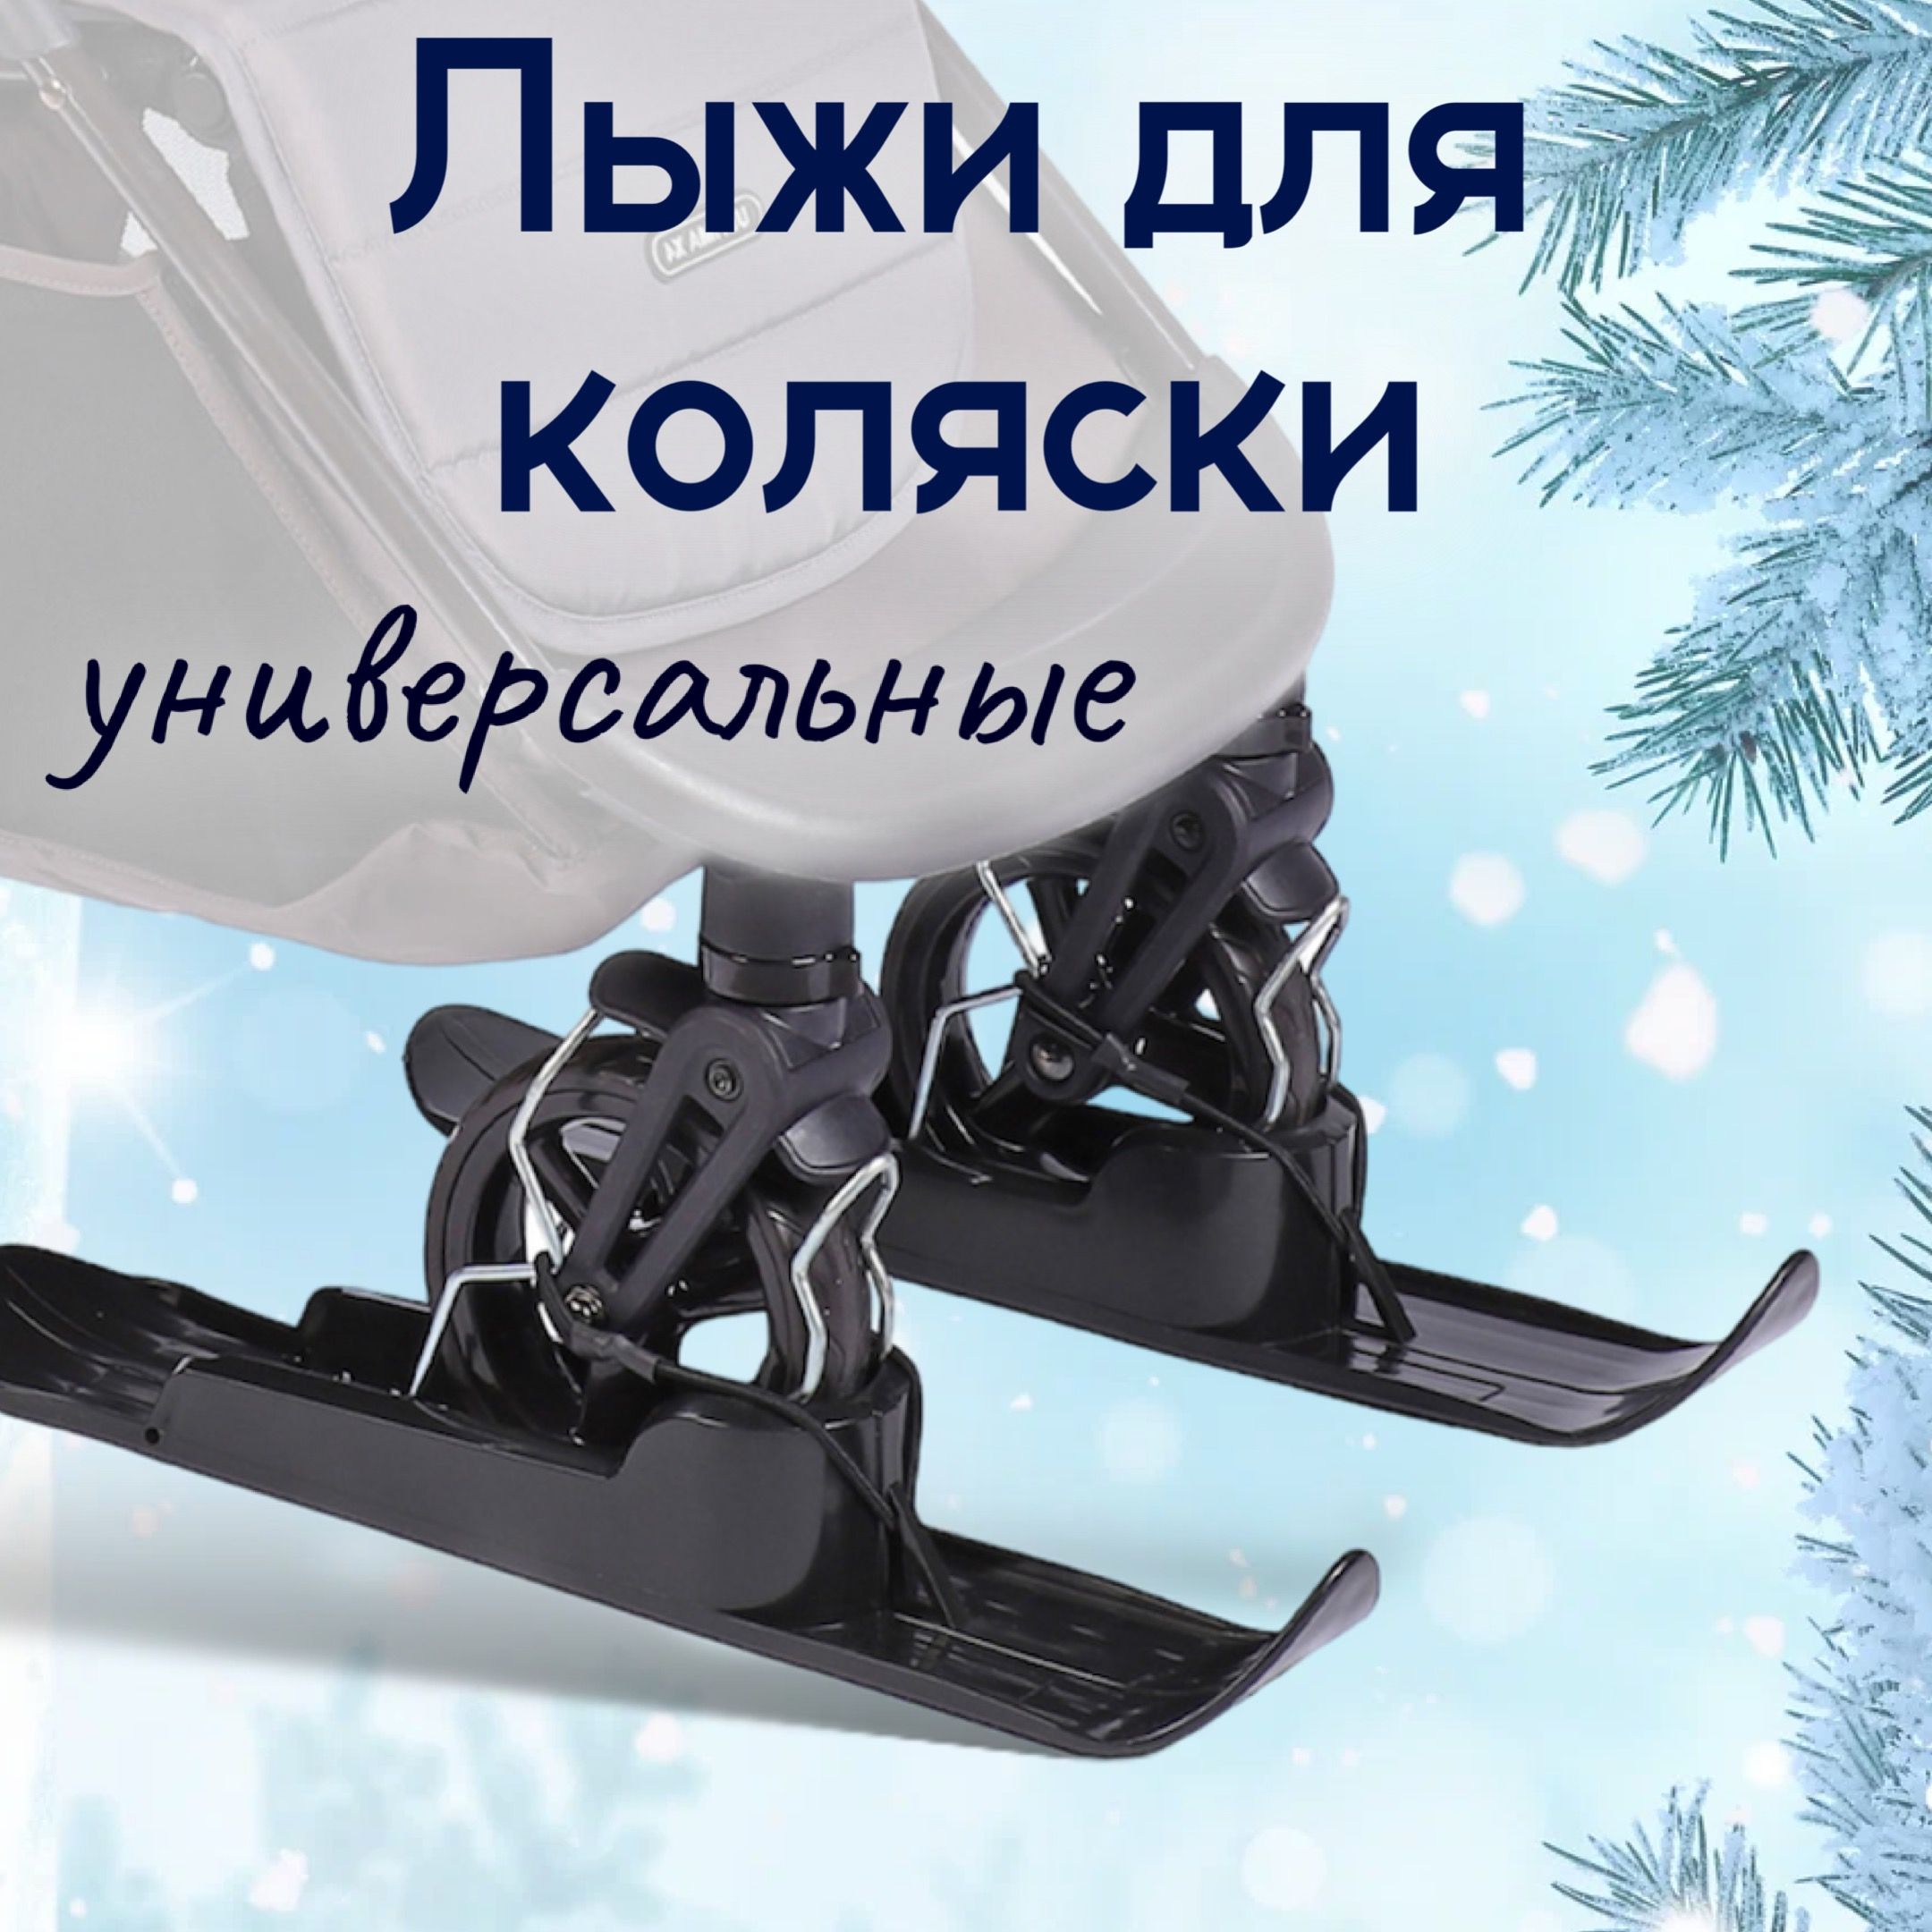 Универсальные лыжи Luxmom для детской коляски